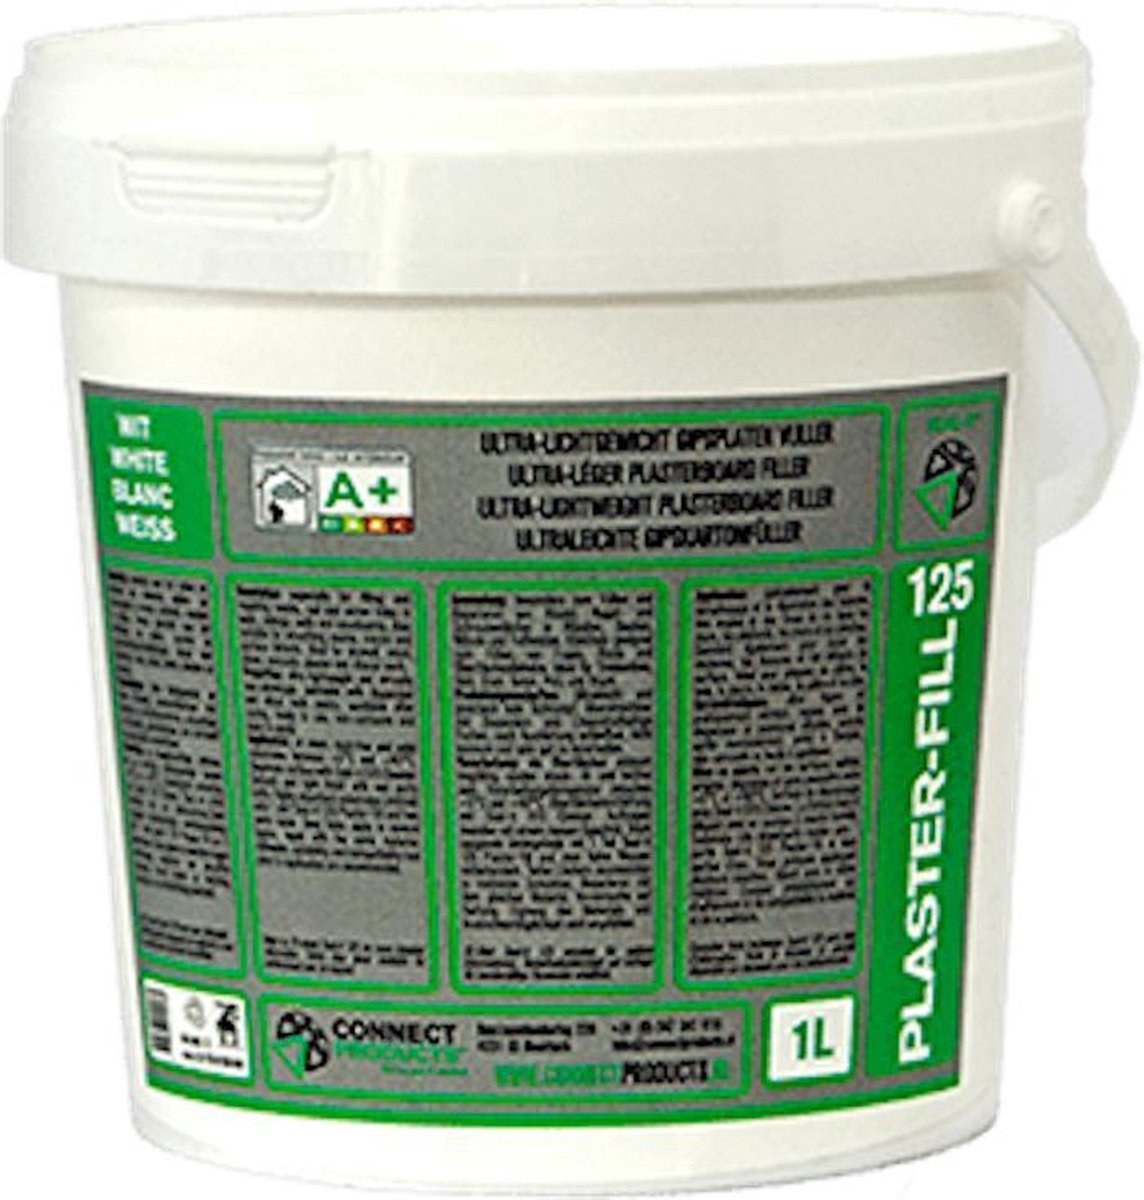 1 liter Seal-it® 125 Allesvuller Plaster-Fill Wit